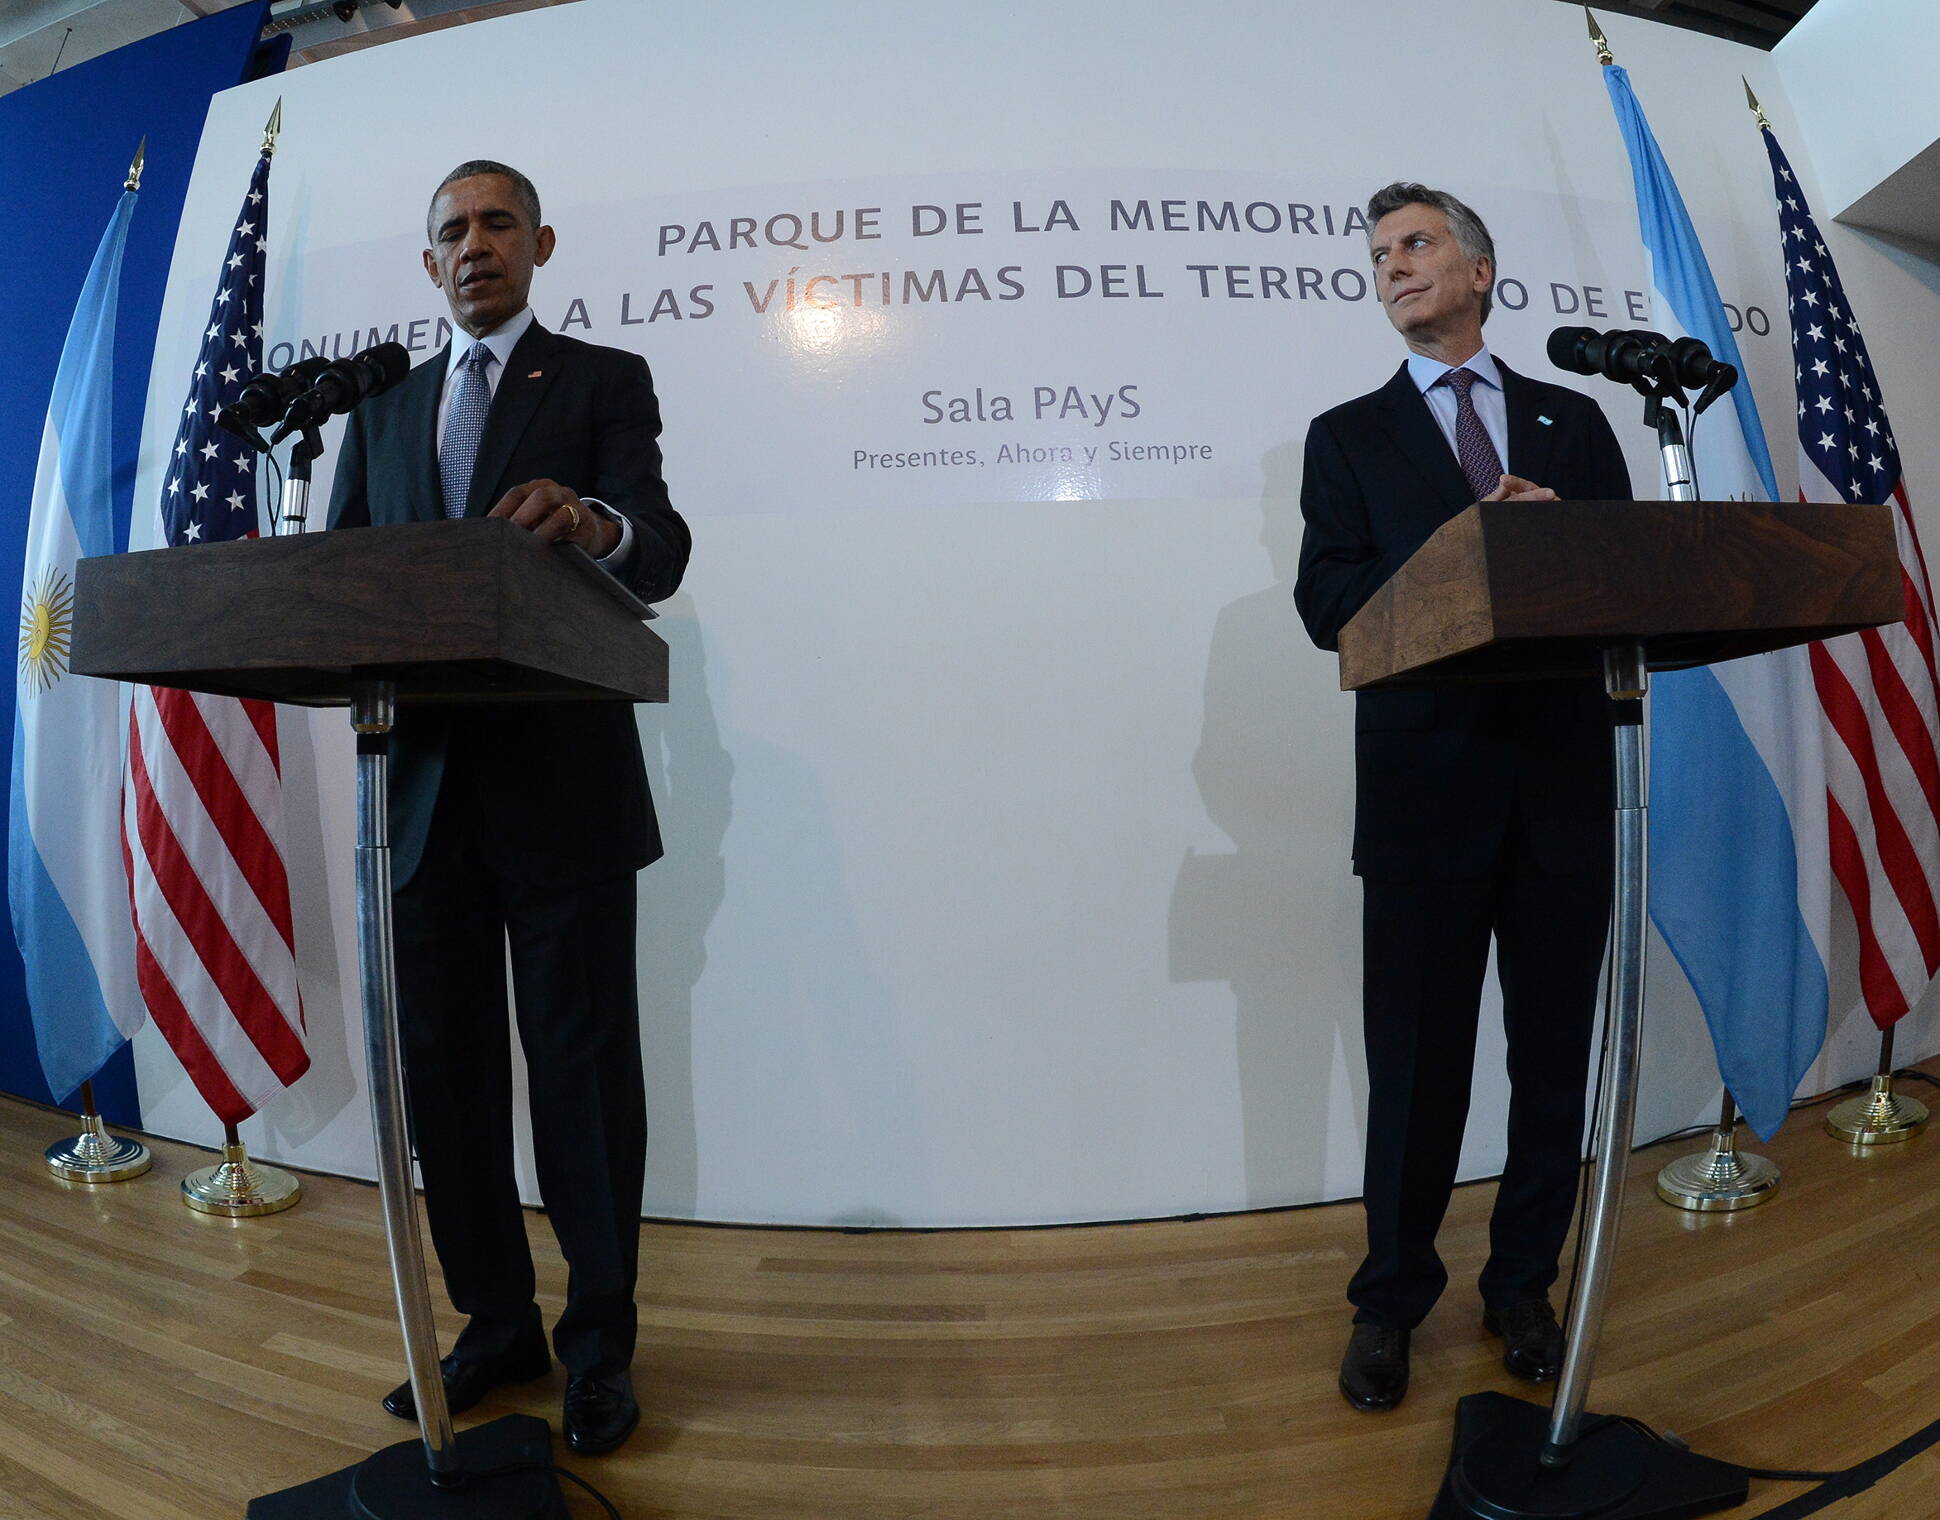 Macri y Obama en el Parque de la Memoria